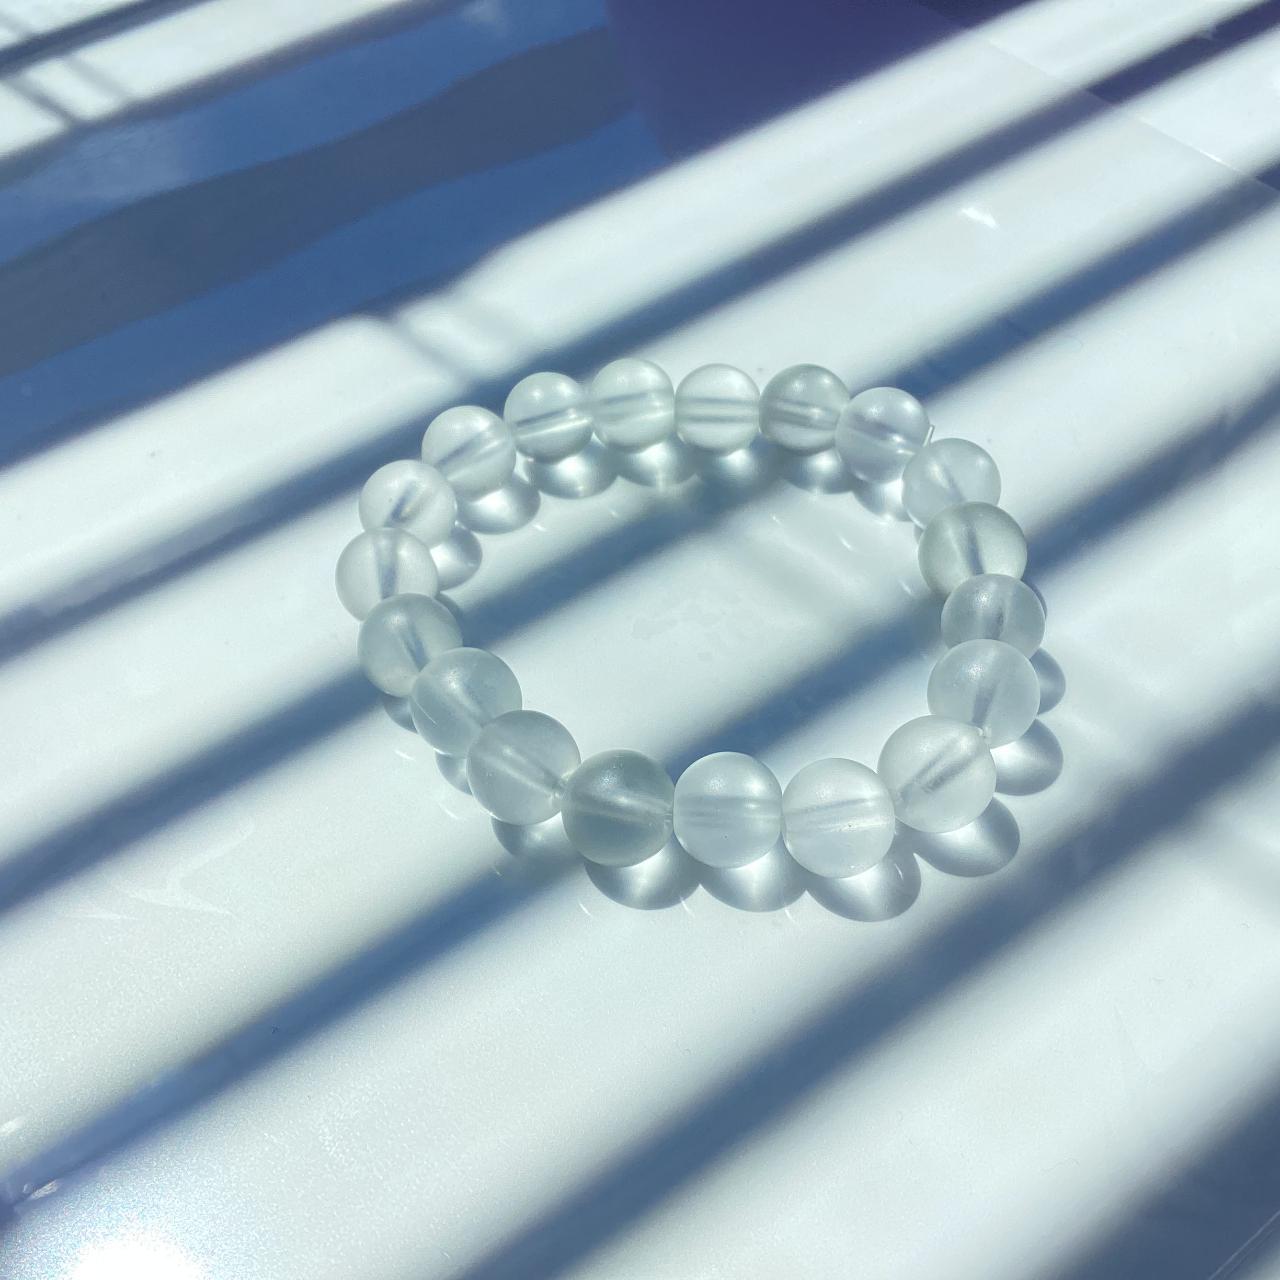 10mm white/clear bracelet - Depop